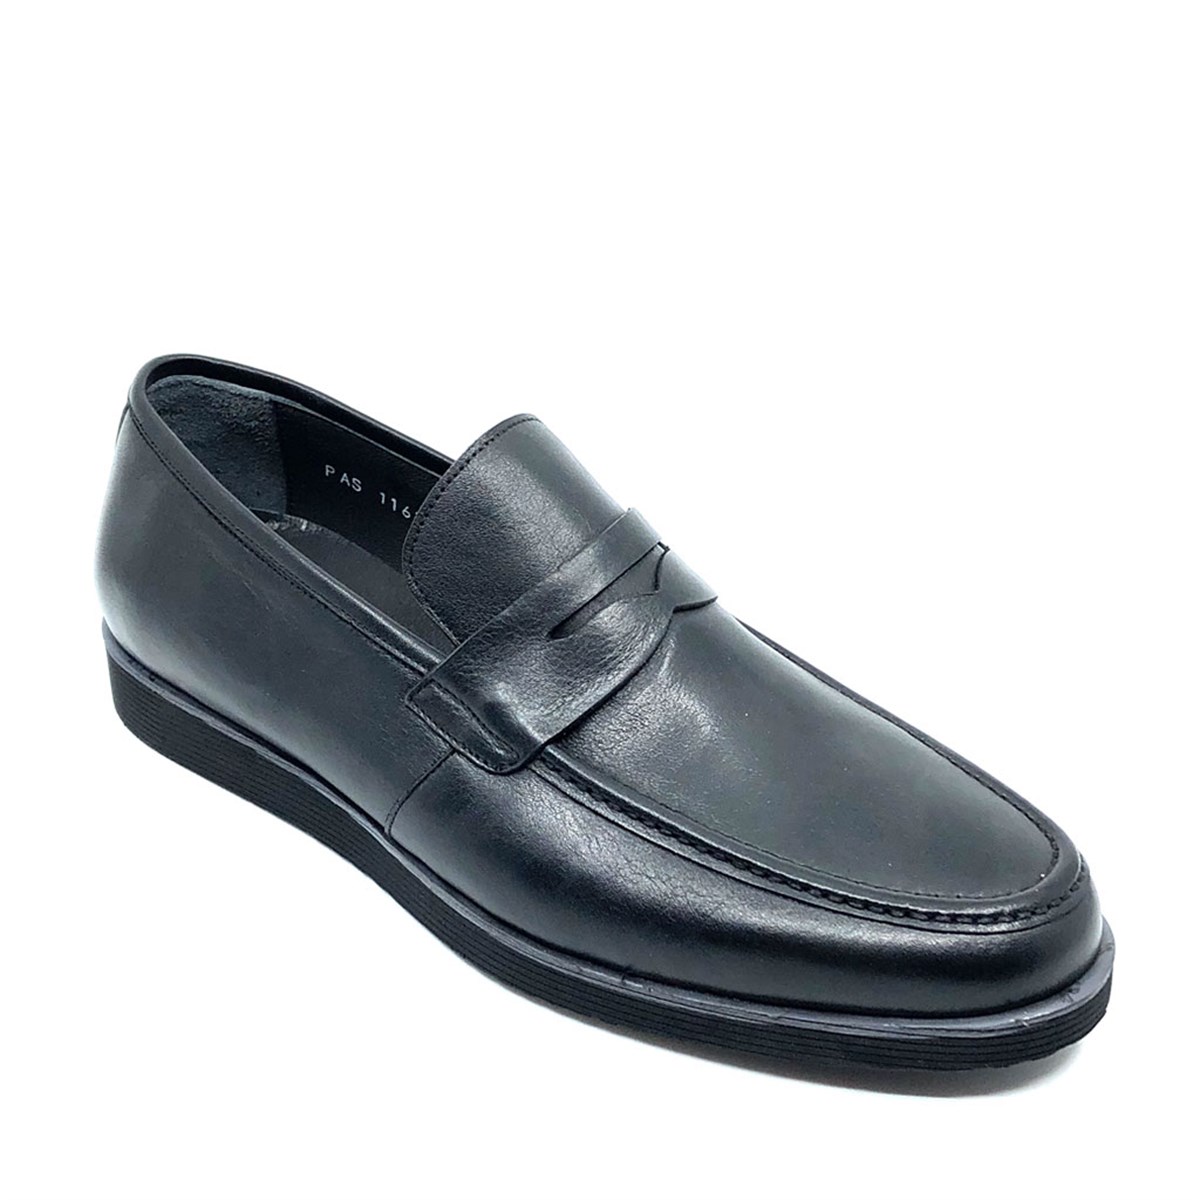 Erkek Siyah Hakiki Deri Bağcıksız Günlük Klasik Ayakkabı, Renk: Siyah, Beden: 39